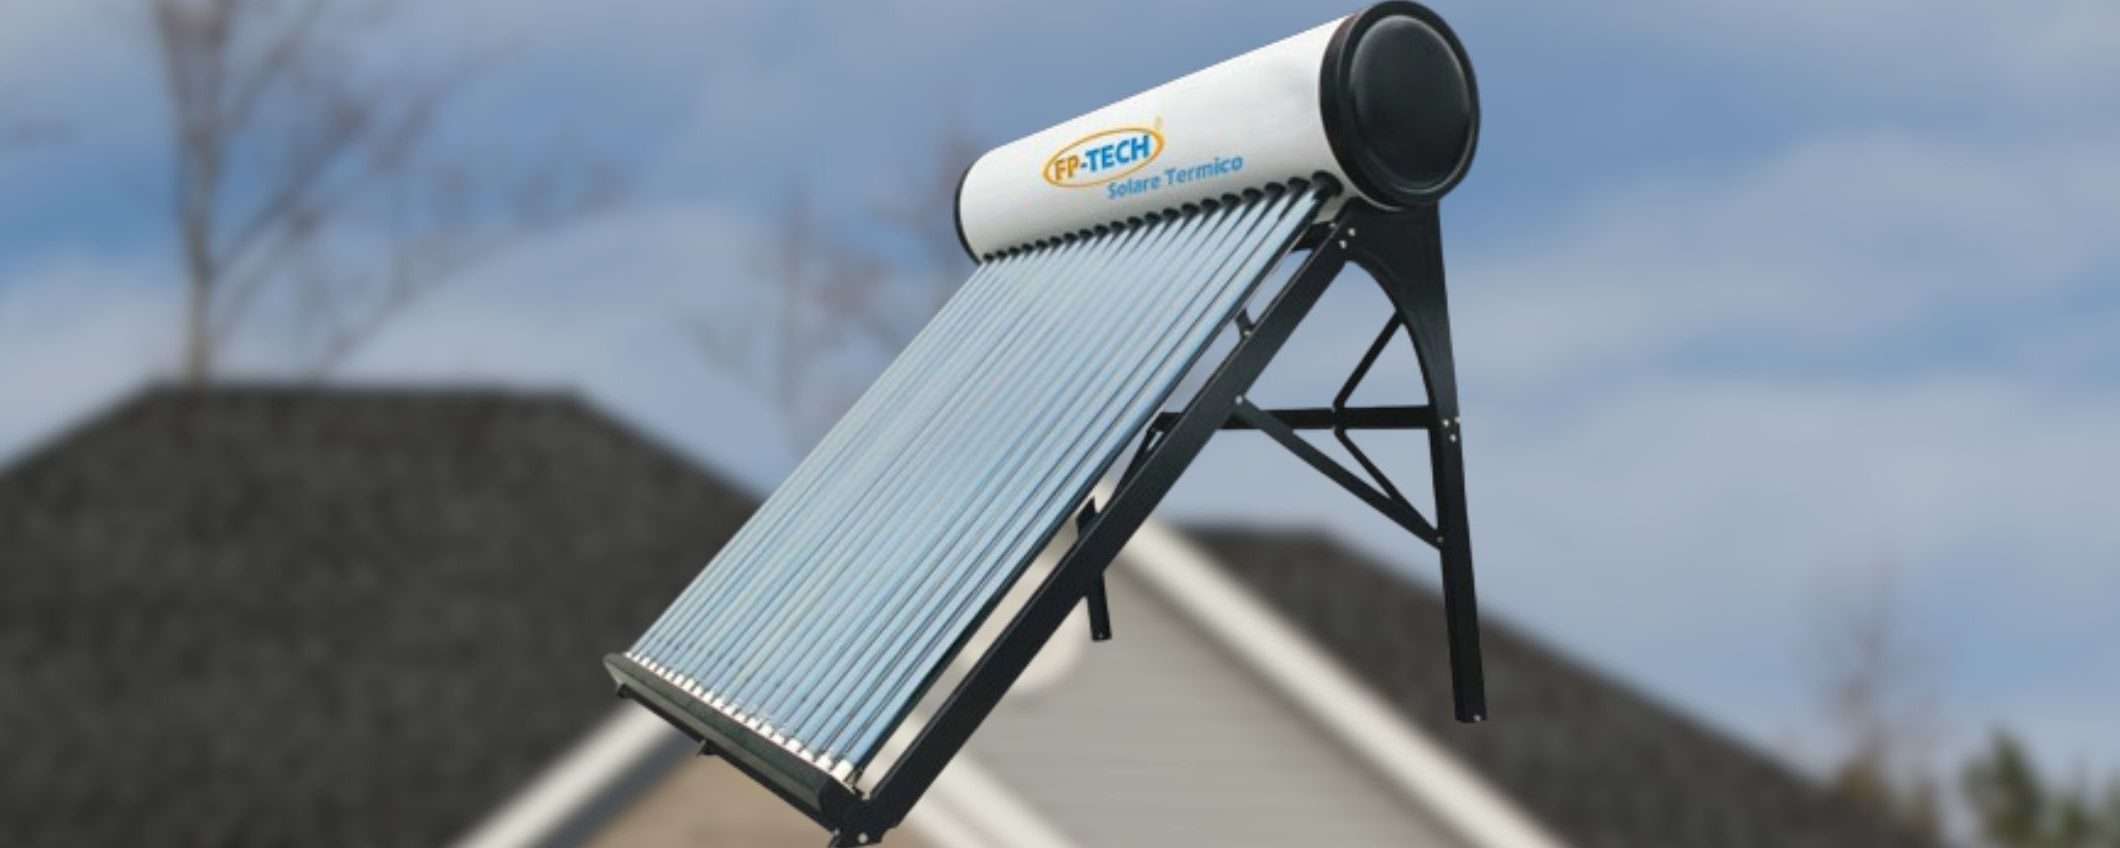 Kit solare termico COMPLETO a 384€: acqua calda GRATIS dal sole, promo SHOCK